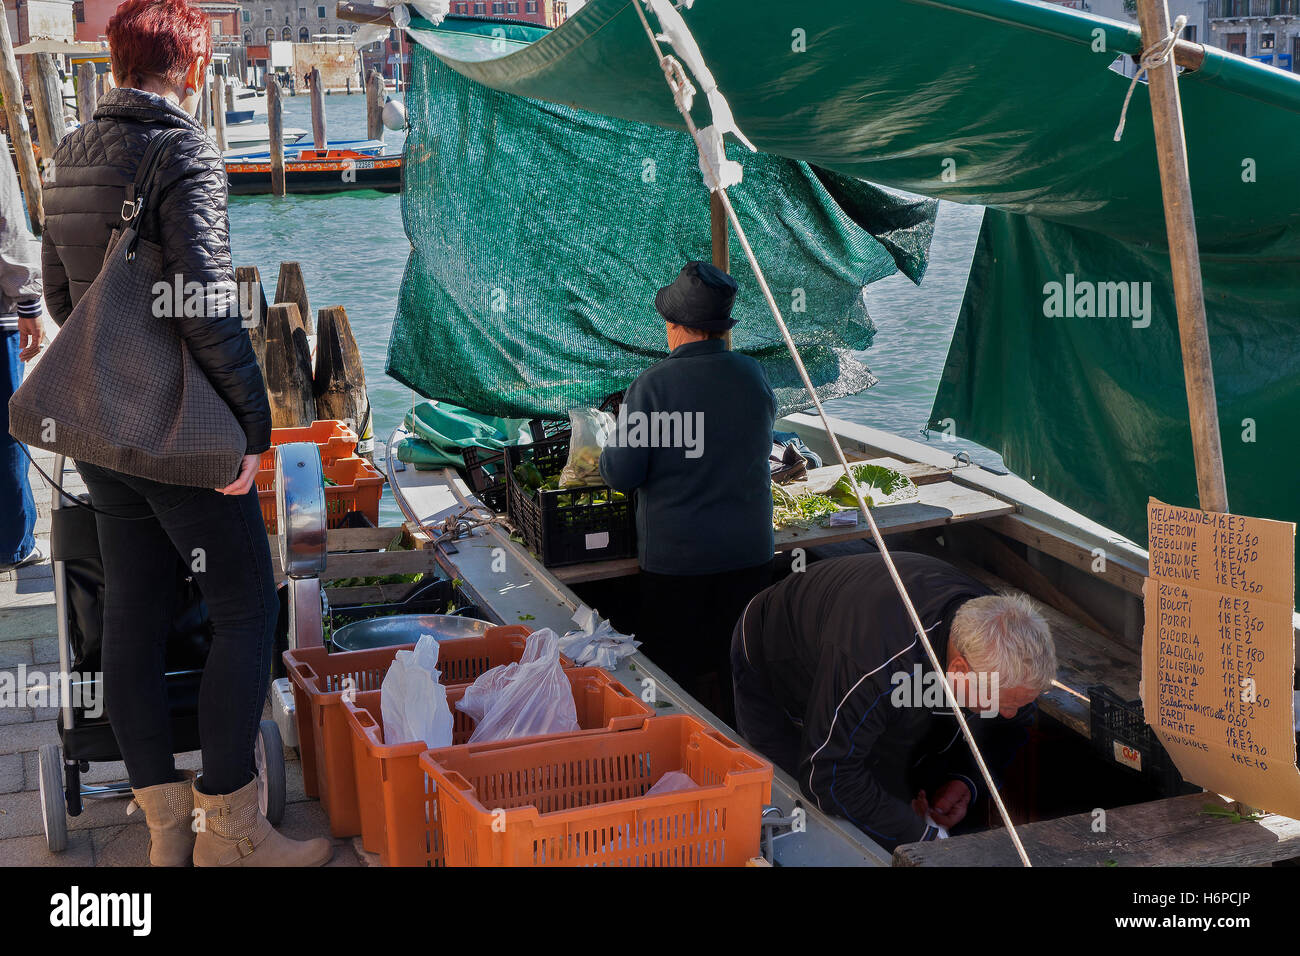 Légumes Shop sur un bateau, l'île de Murano, Venise, Italie Banque D'Images